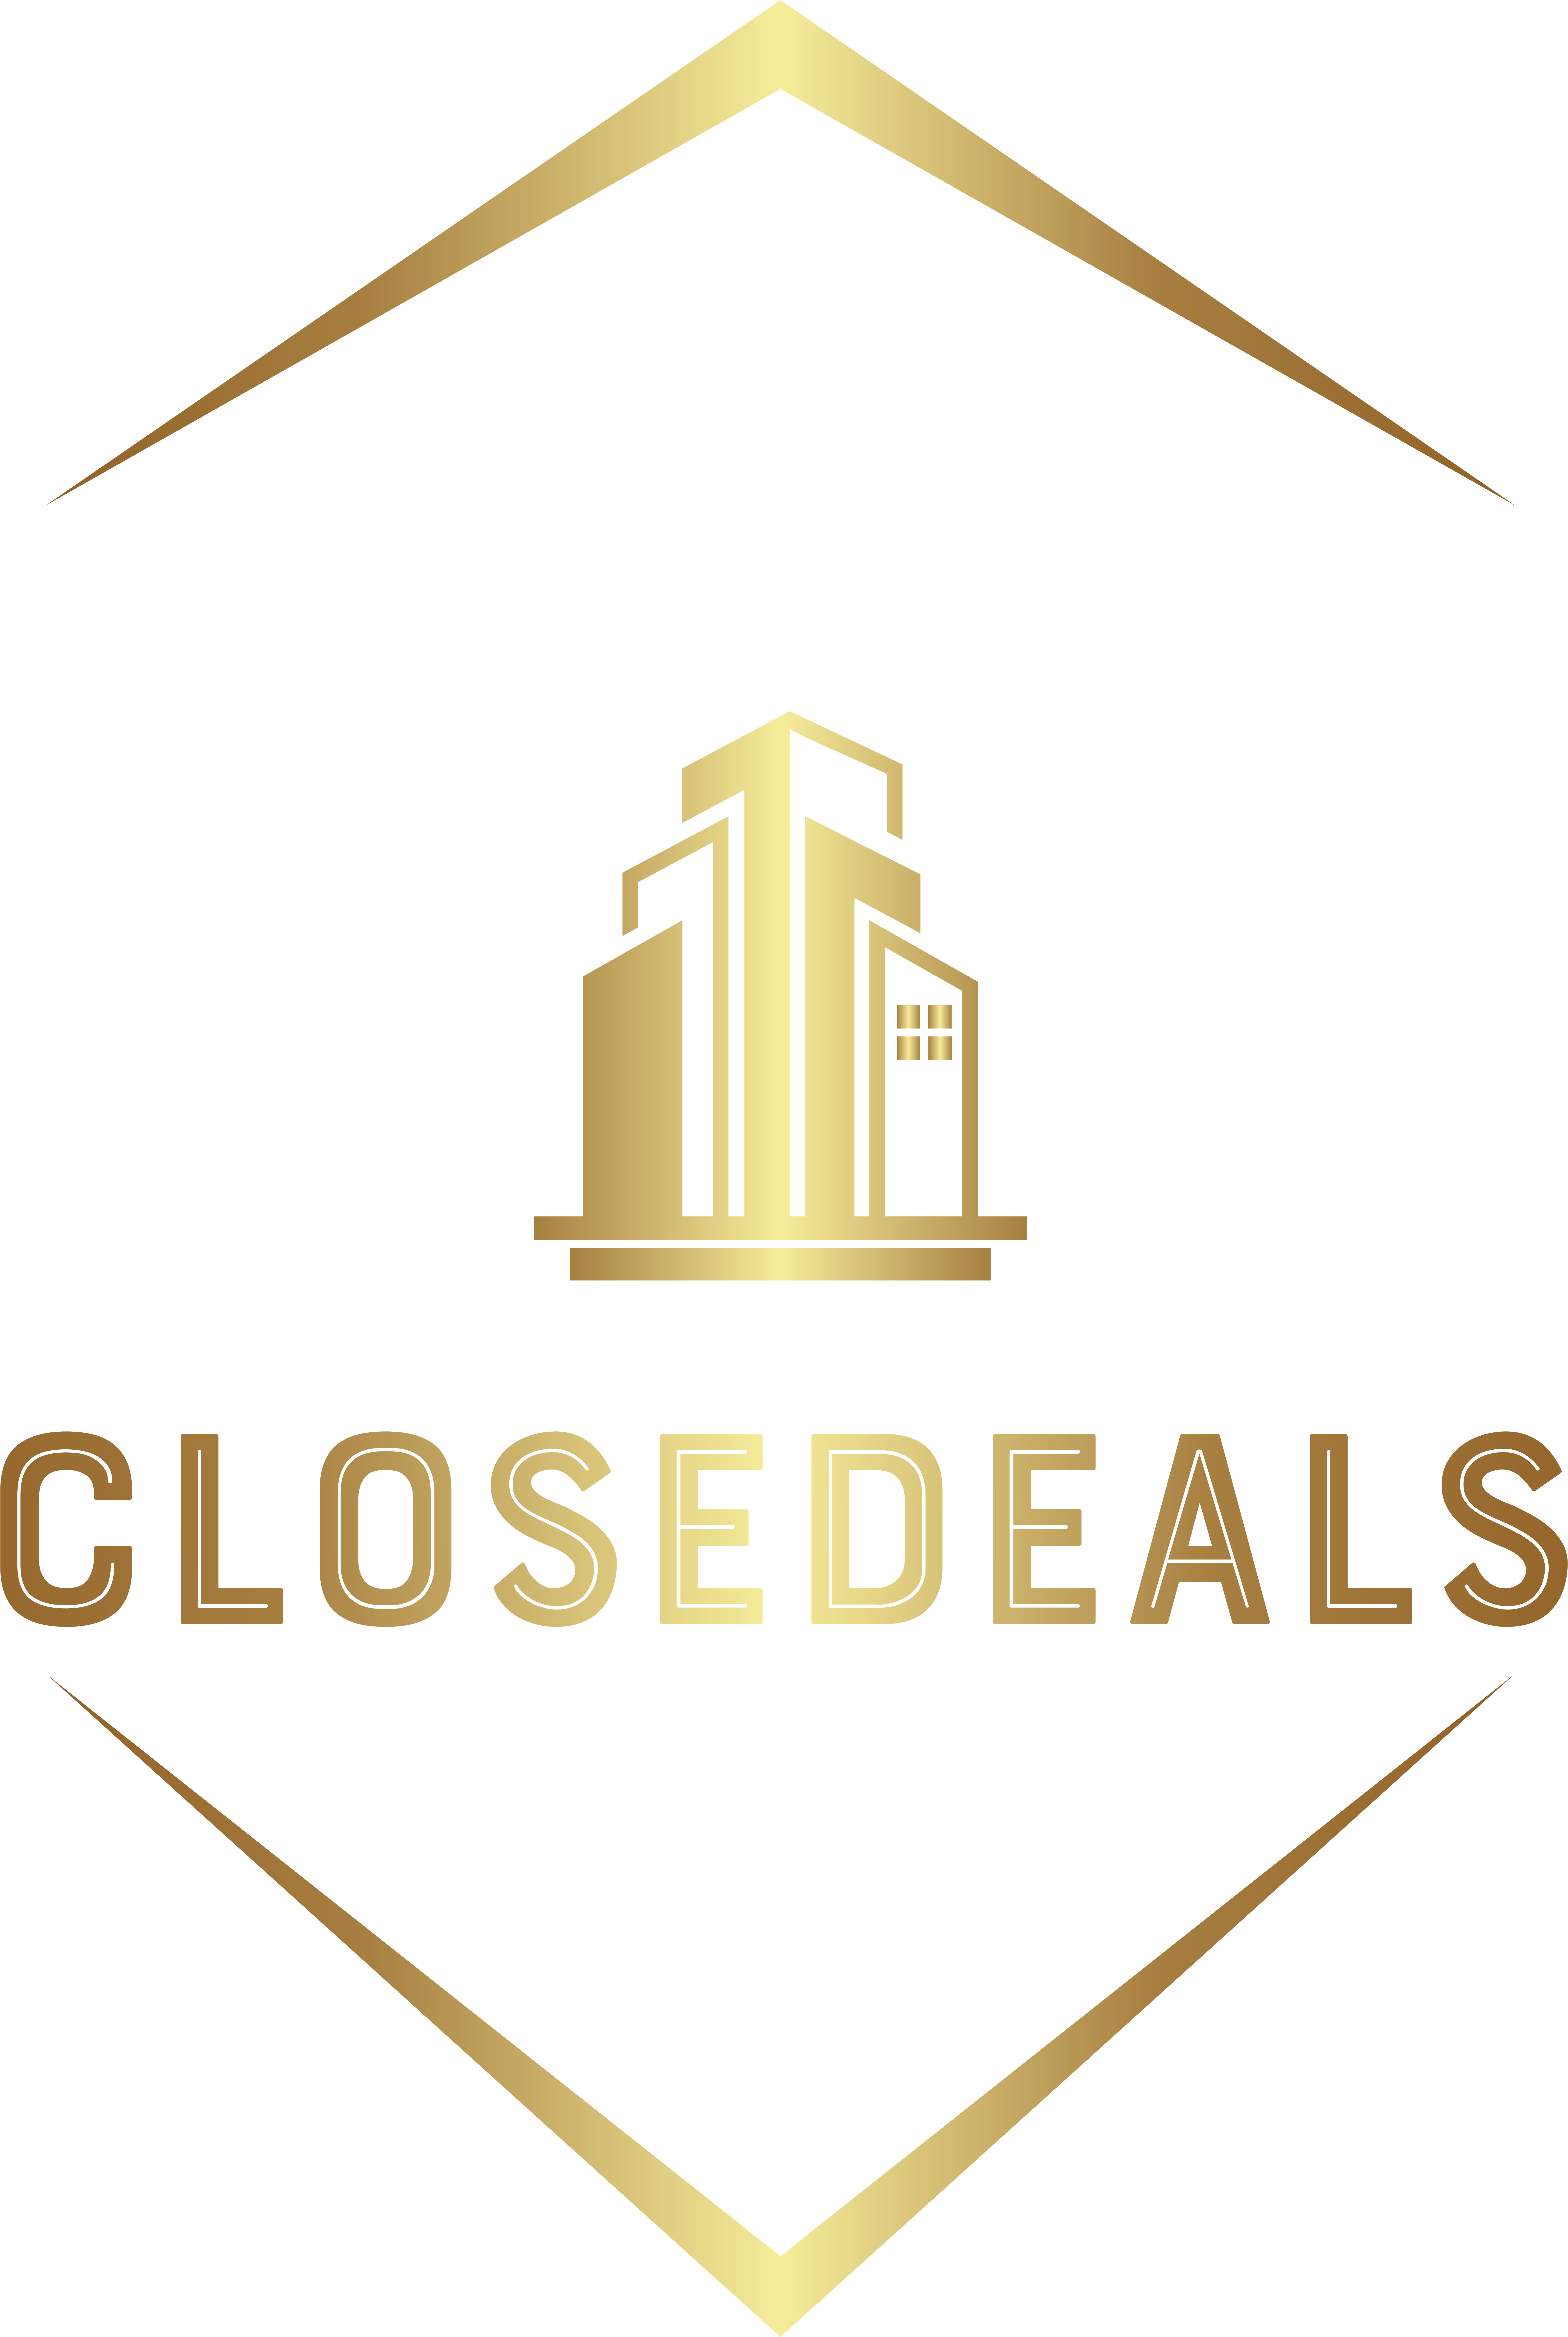 Closedeals logo